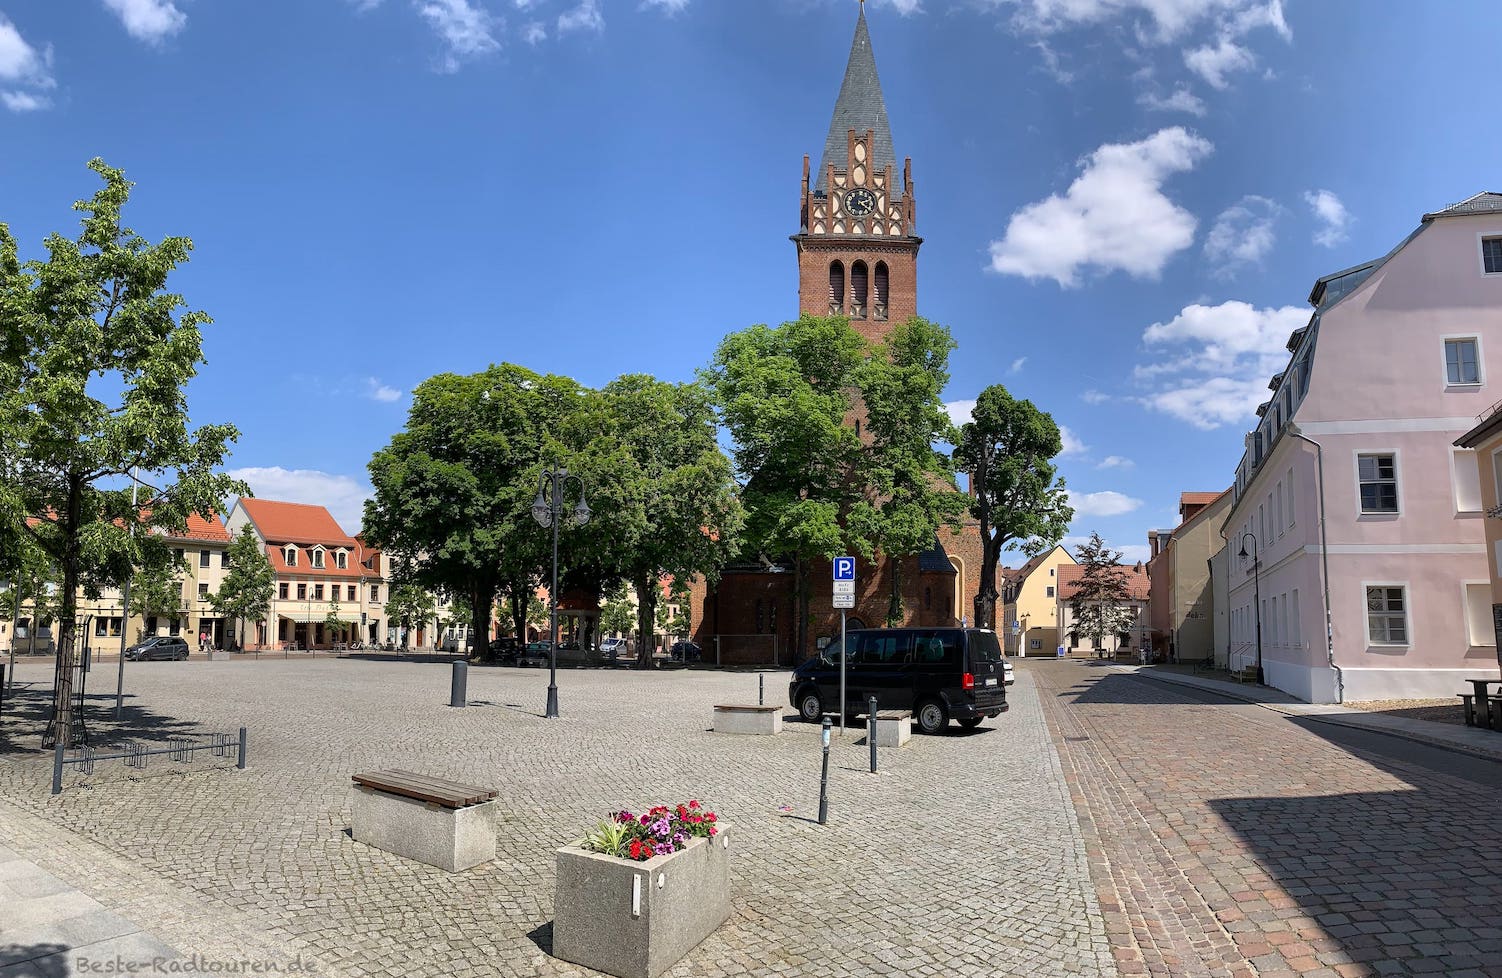 Marktplatz und Kirche von Bad Liebenwerda, Foto vom Westen aus